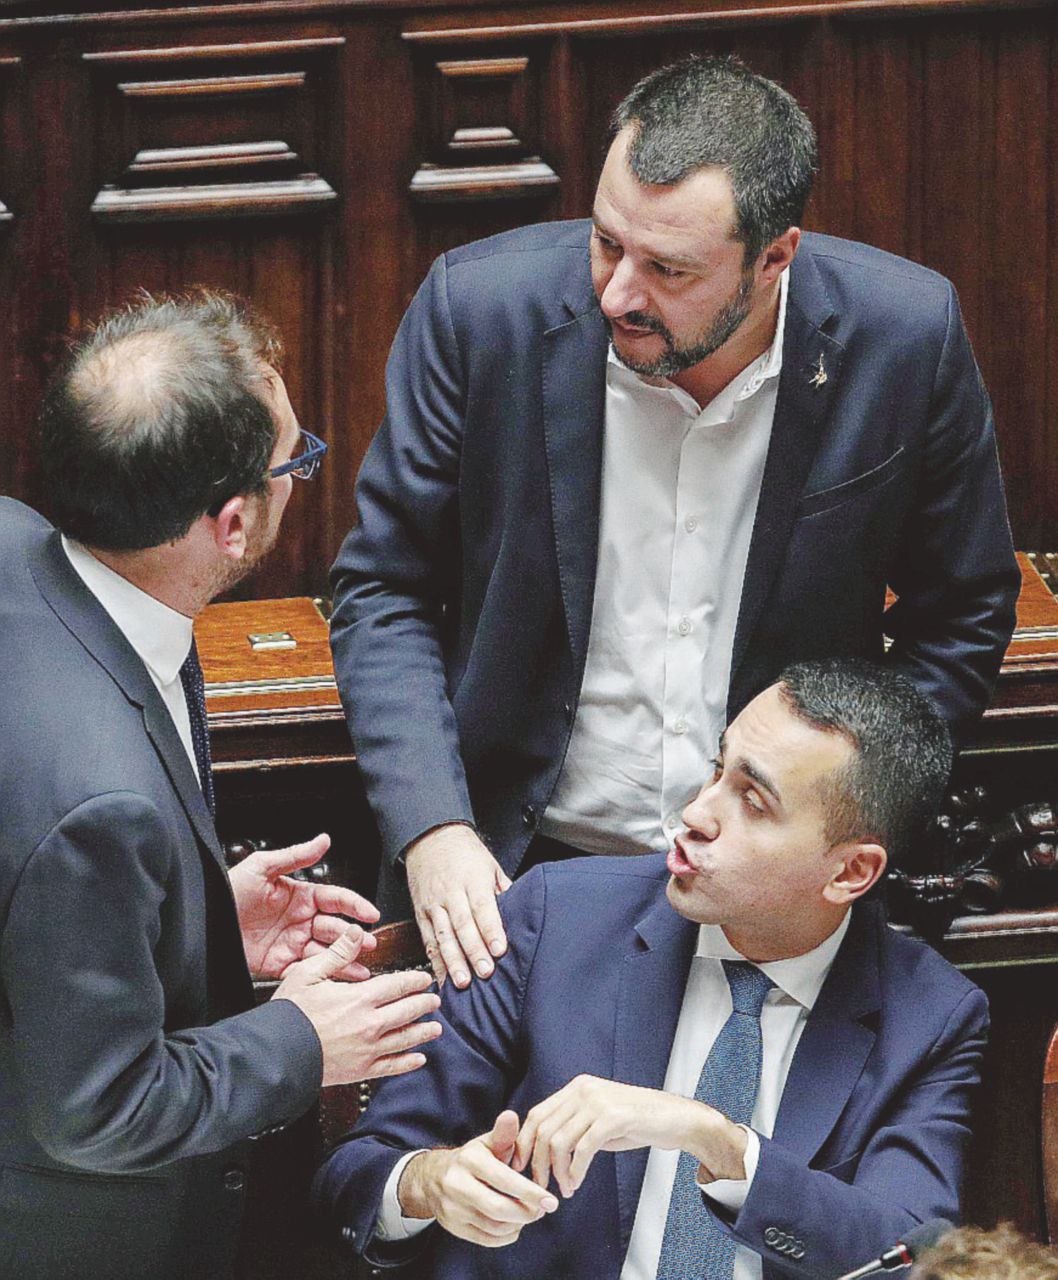 In Edicola sul Fatto Quotidiano del 26 Gennaio: M5S: “Sì al processo Salvini”. “Se lo vuole, lo avrà”